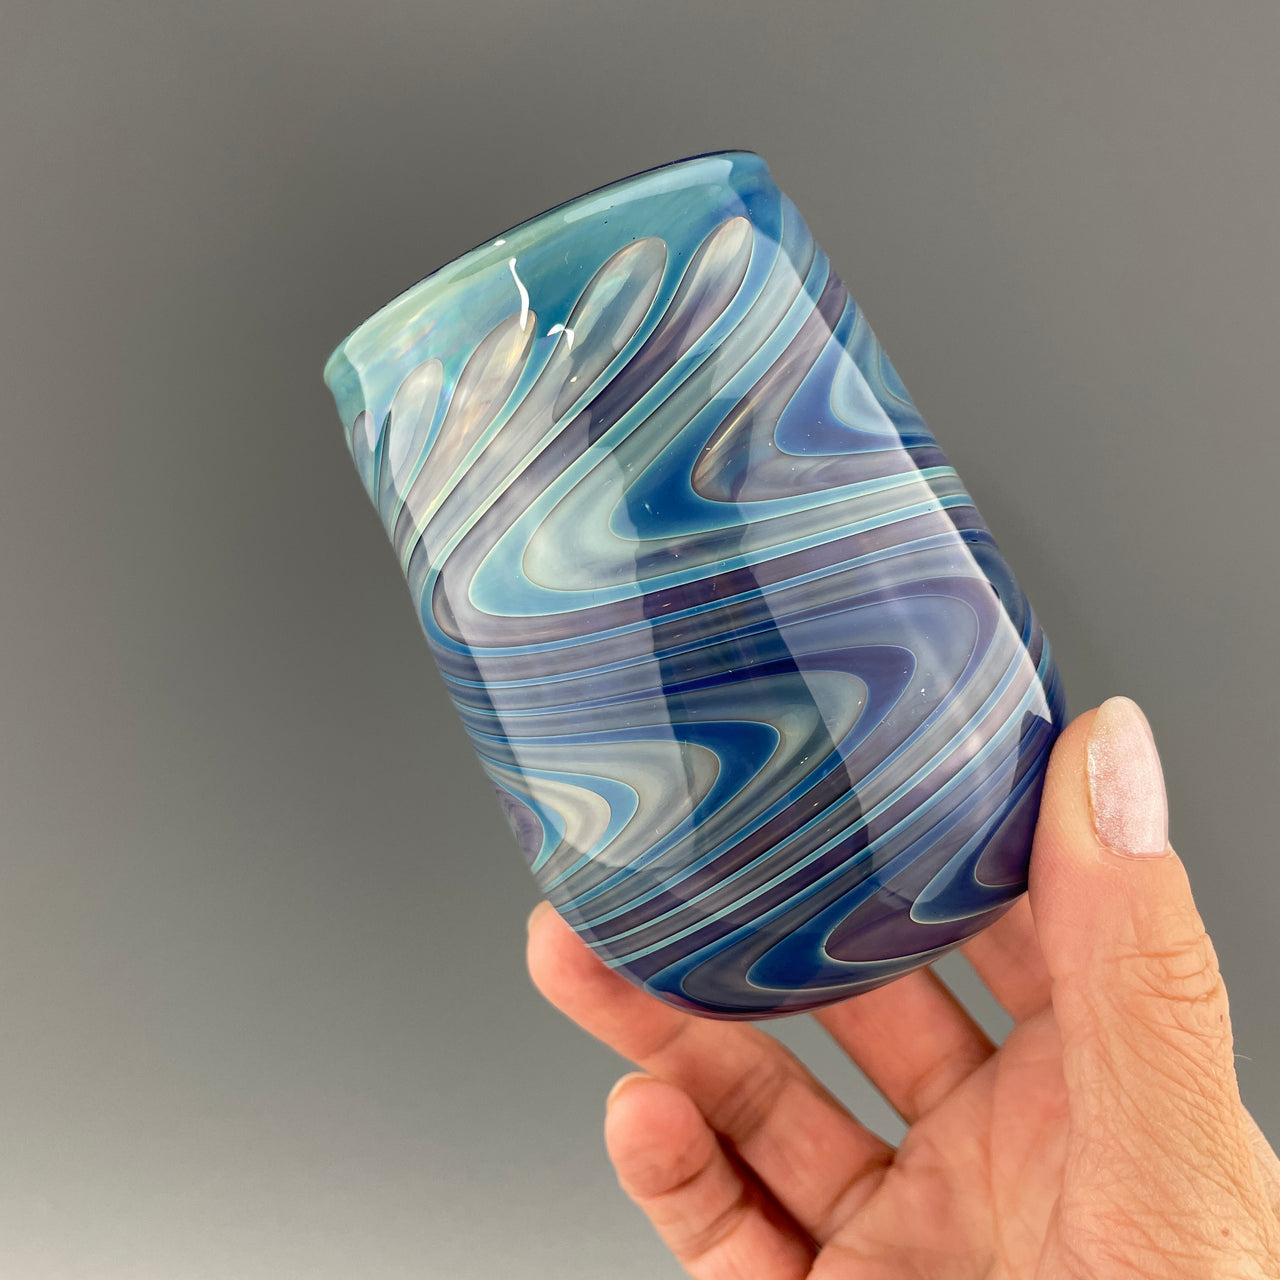 cobalt blue stemless wineglass